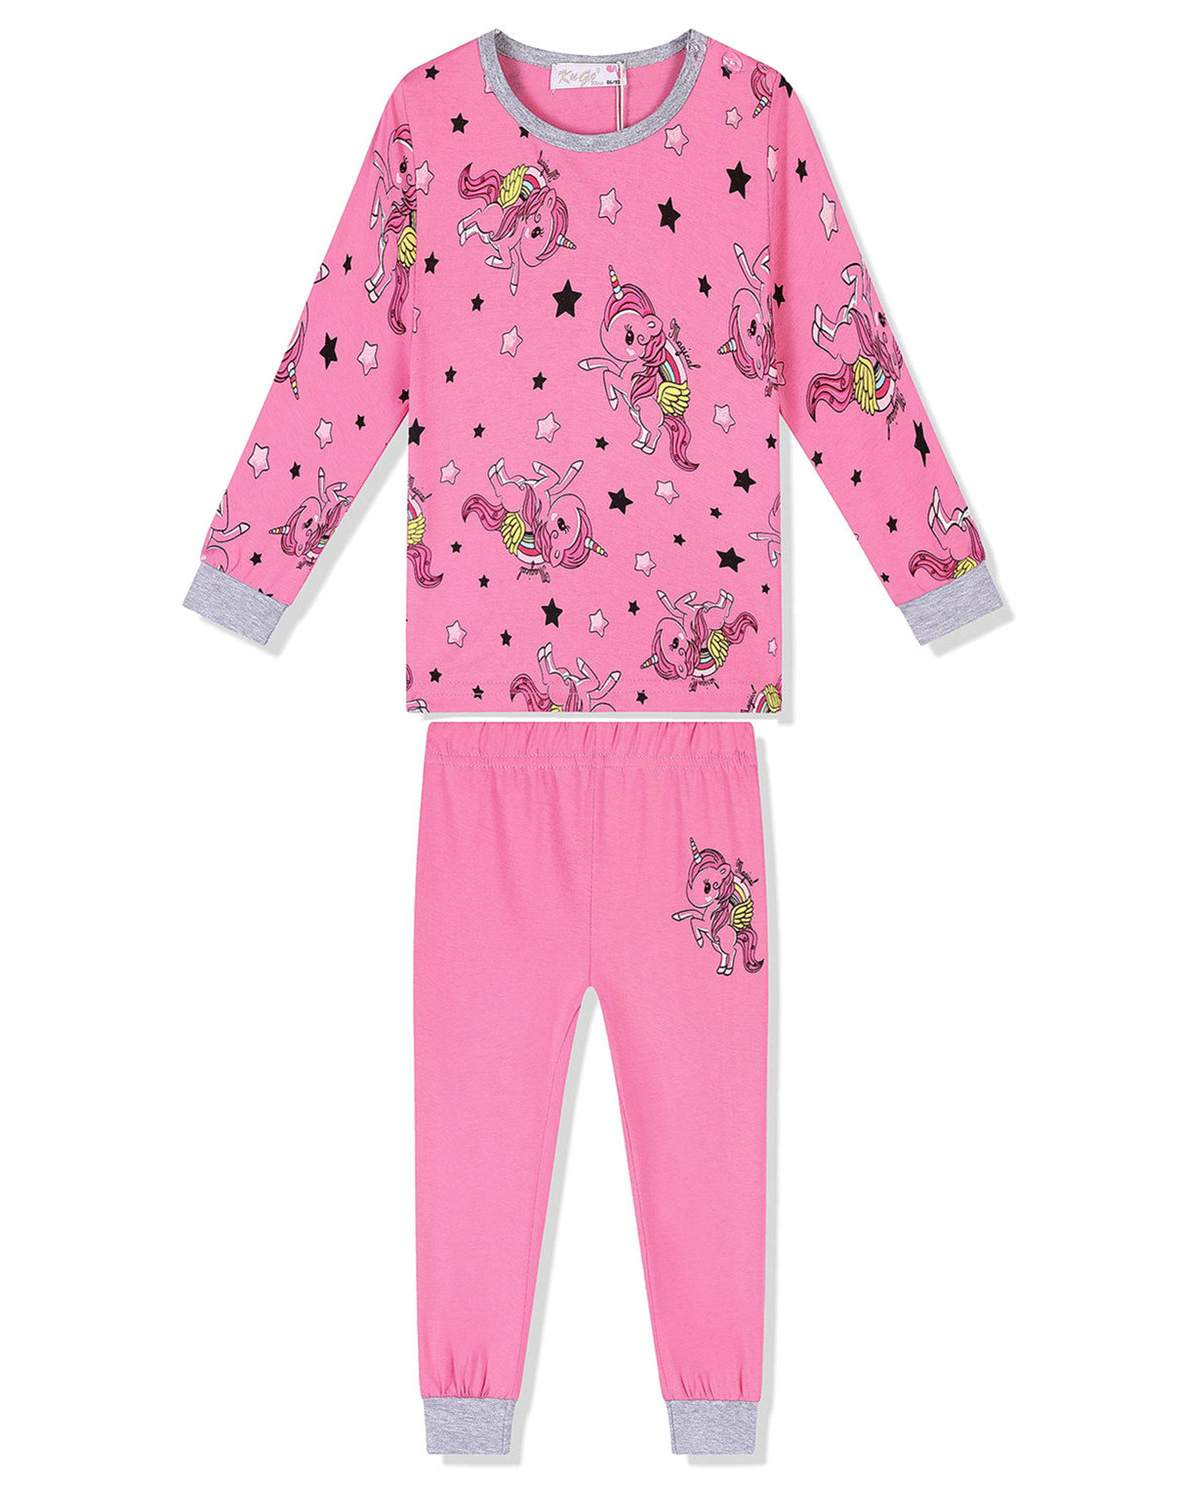 Dívčí pyžamo - KUGO MP1326, sytě růžová Barva: Růžová tmavší, Velikost: 98-104